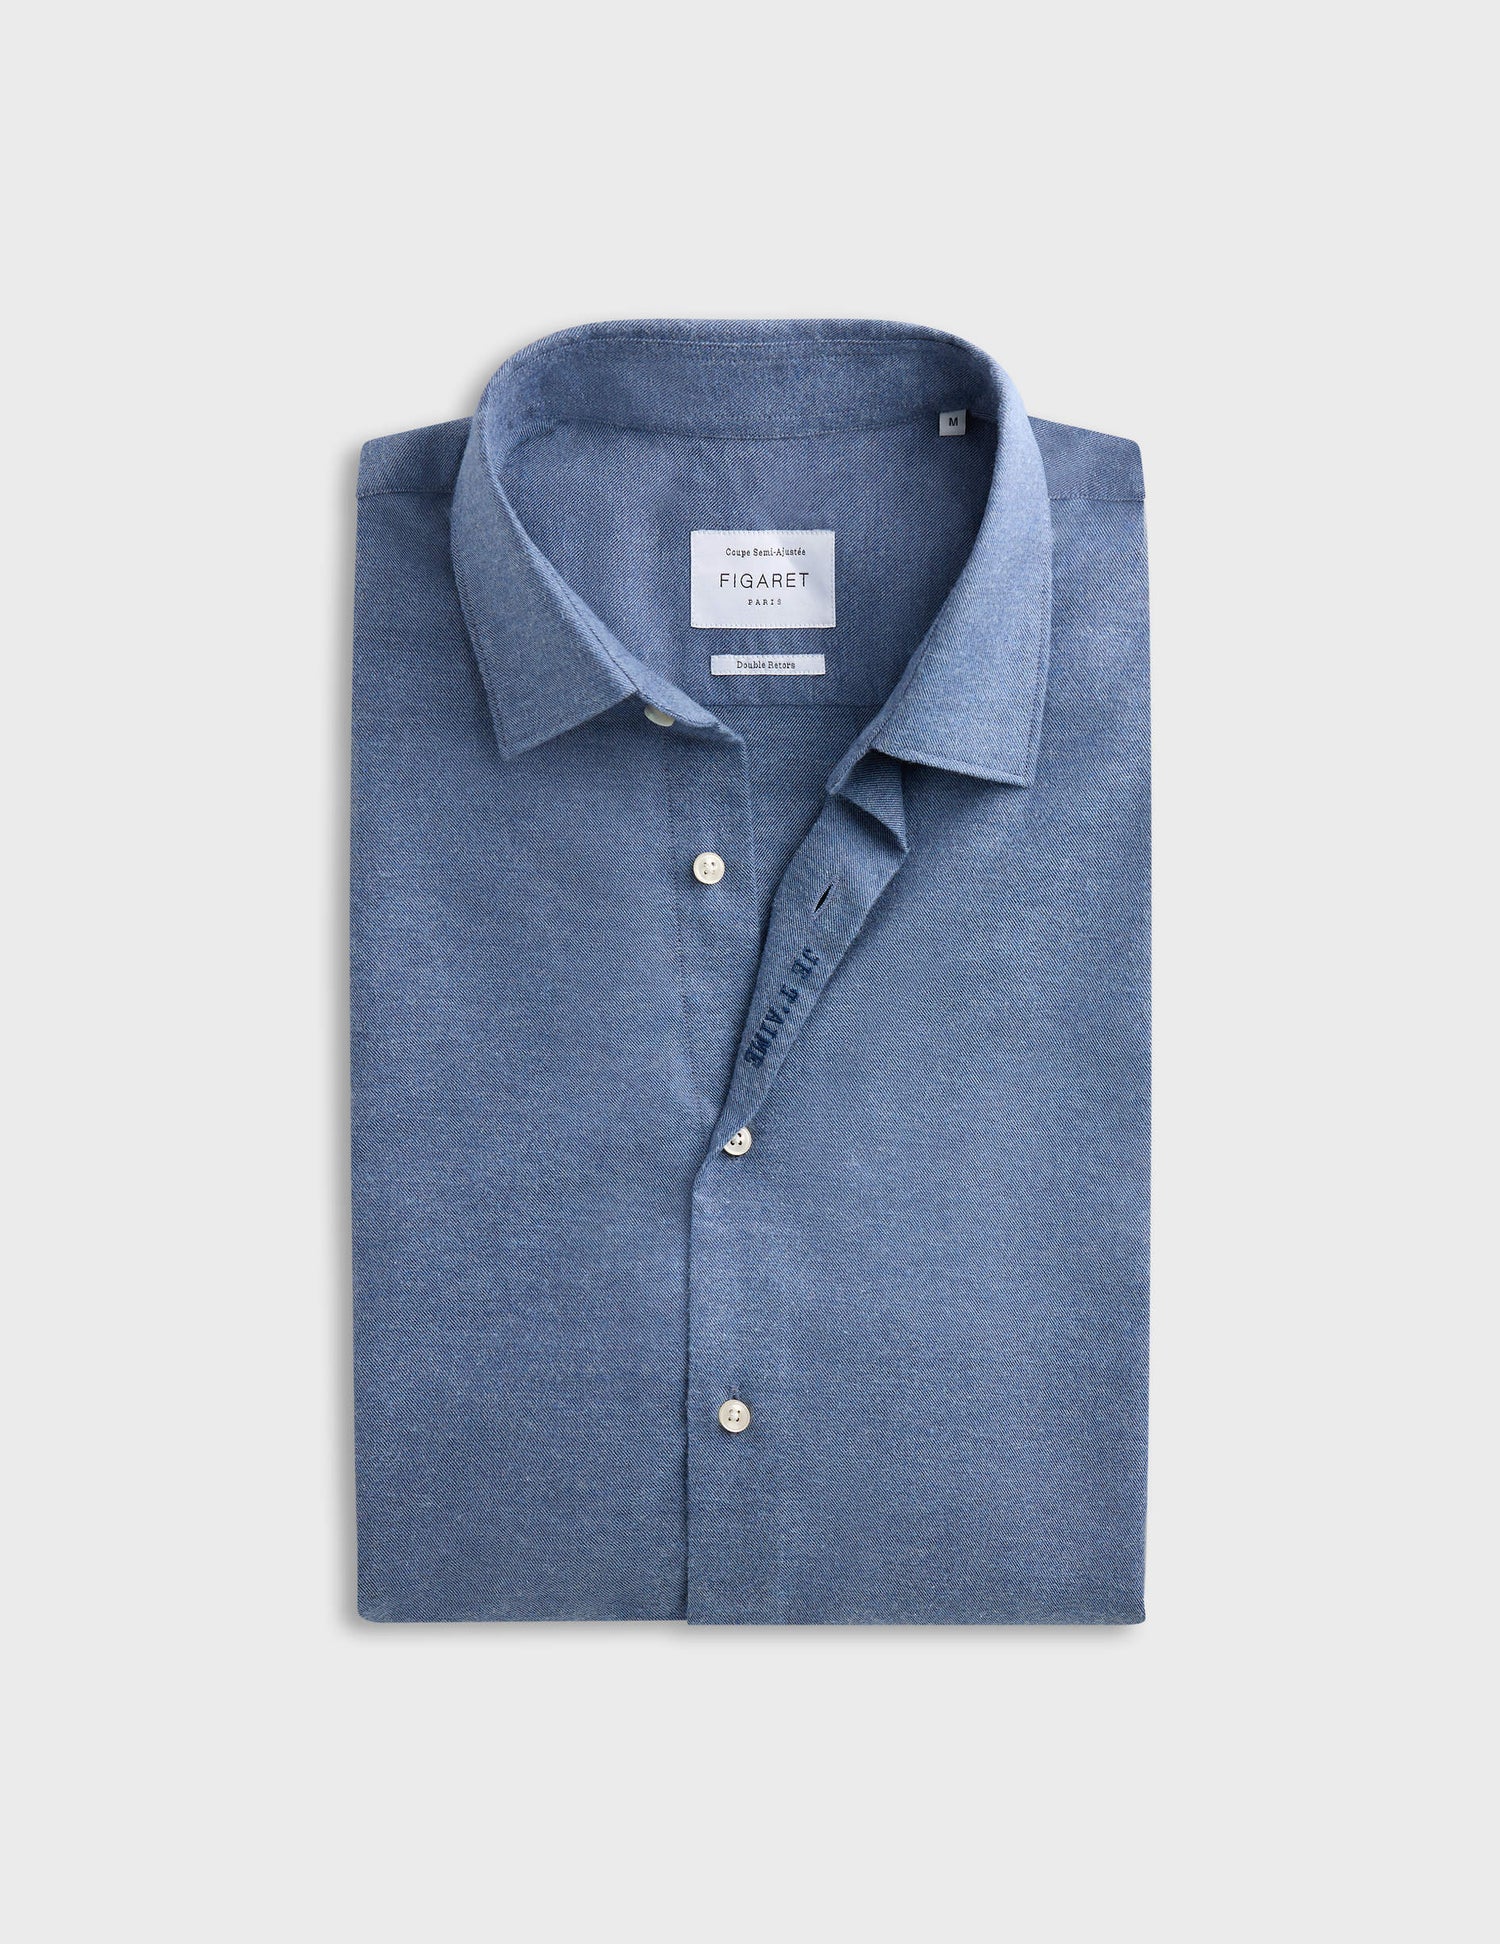 Chemise mixte "je t'aime" en coton et cachemire bleu - Flanelle - Col Figaret#9